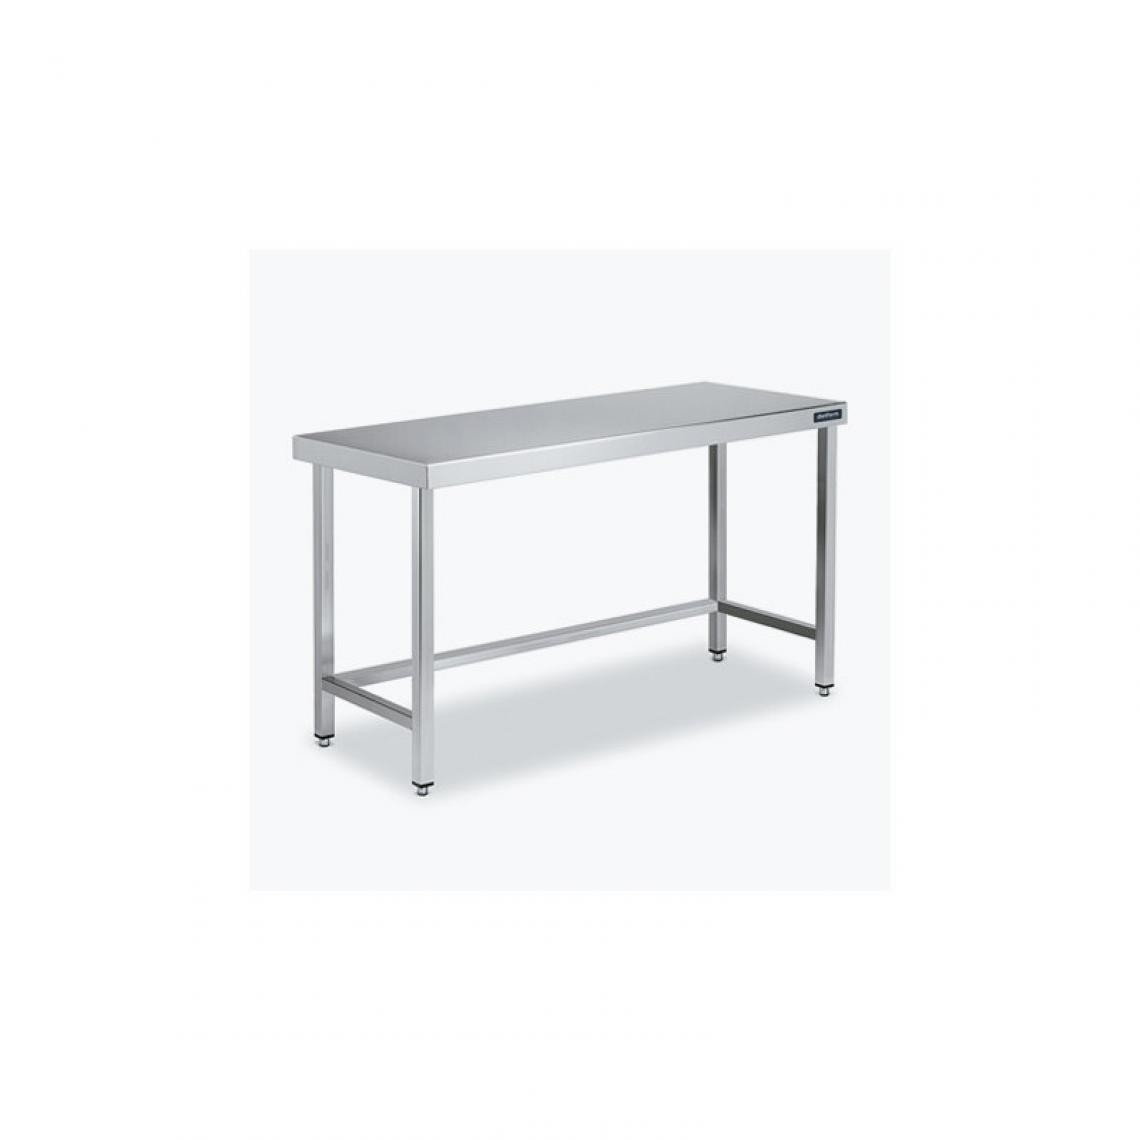 DISTFORM - Table Centrale 600x600 avec Renforts - Distform - Inox 18/101600x600x850mm - Tables à manger